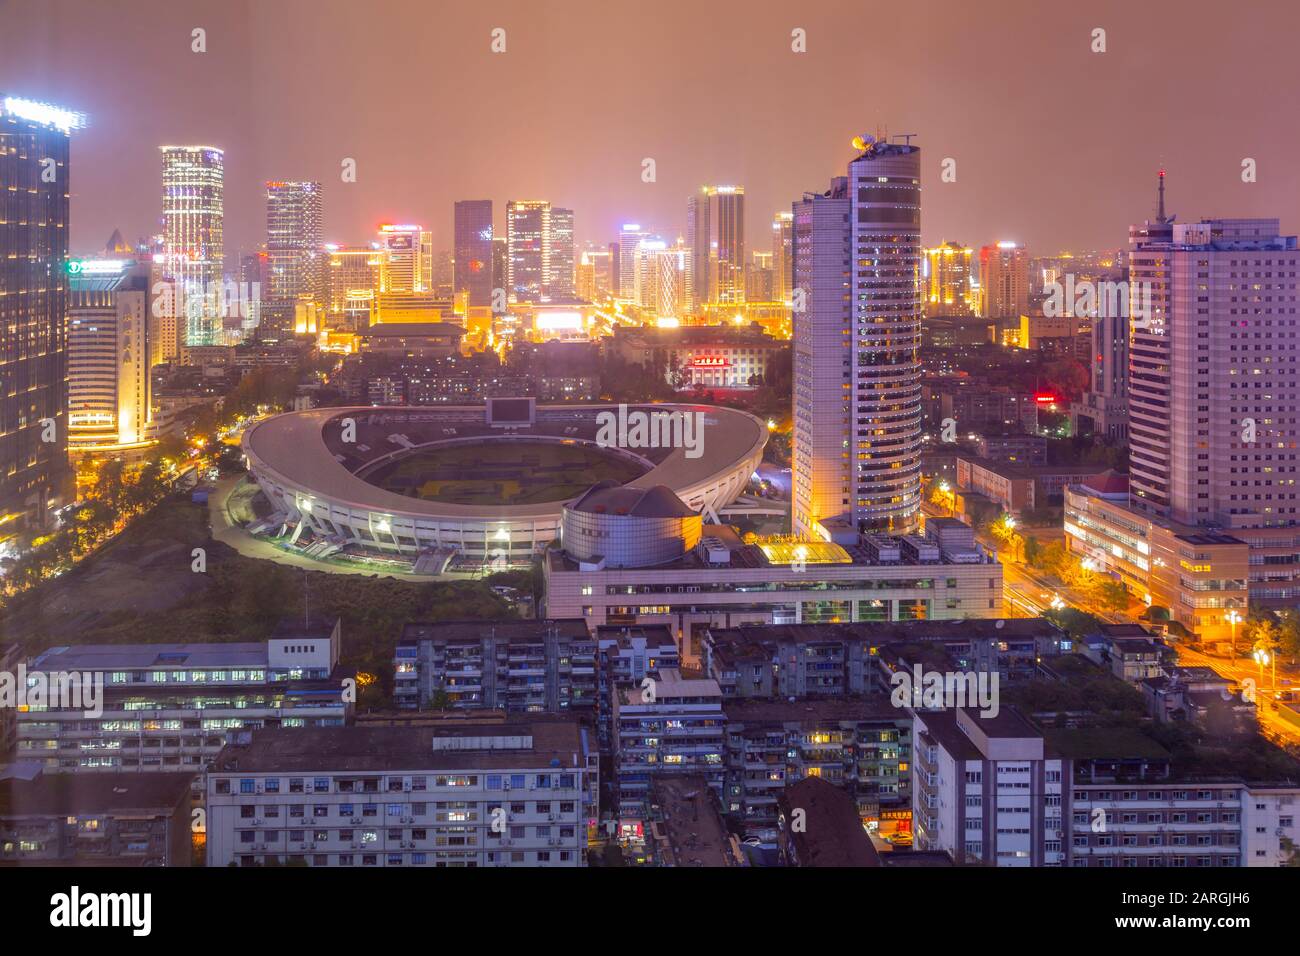 Blick auf das Tianfu Expo Center in der Nacht, Chengdu, Provinz Sichuan, Volksrepublik China, Asien Stockfoto